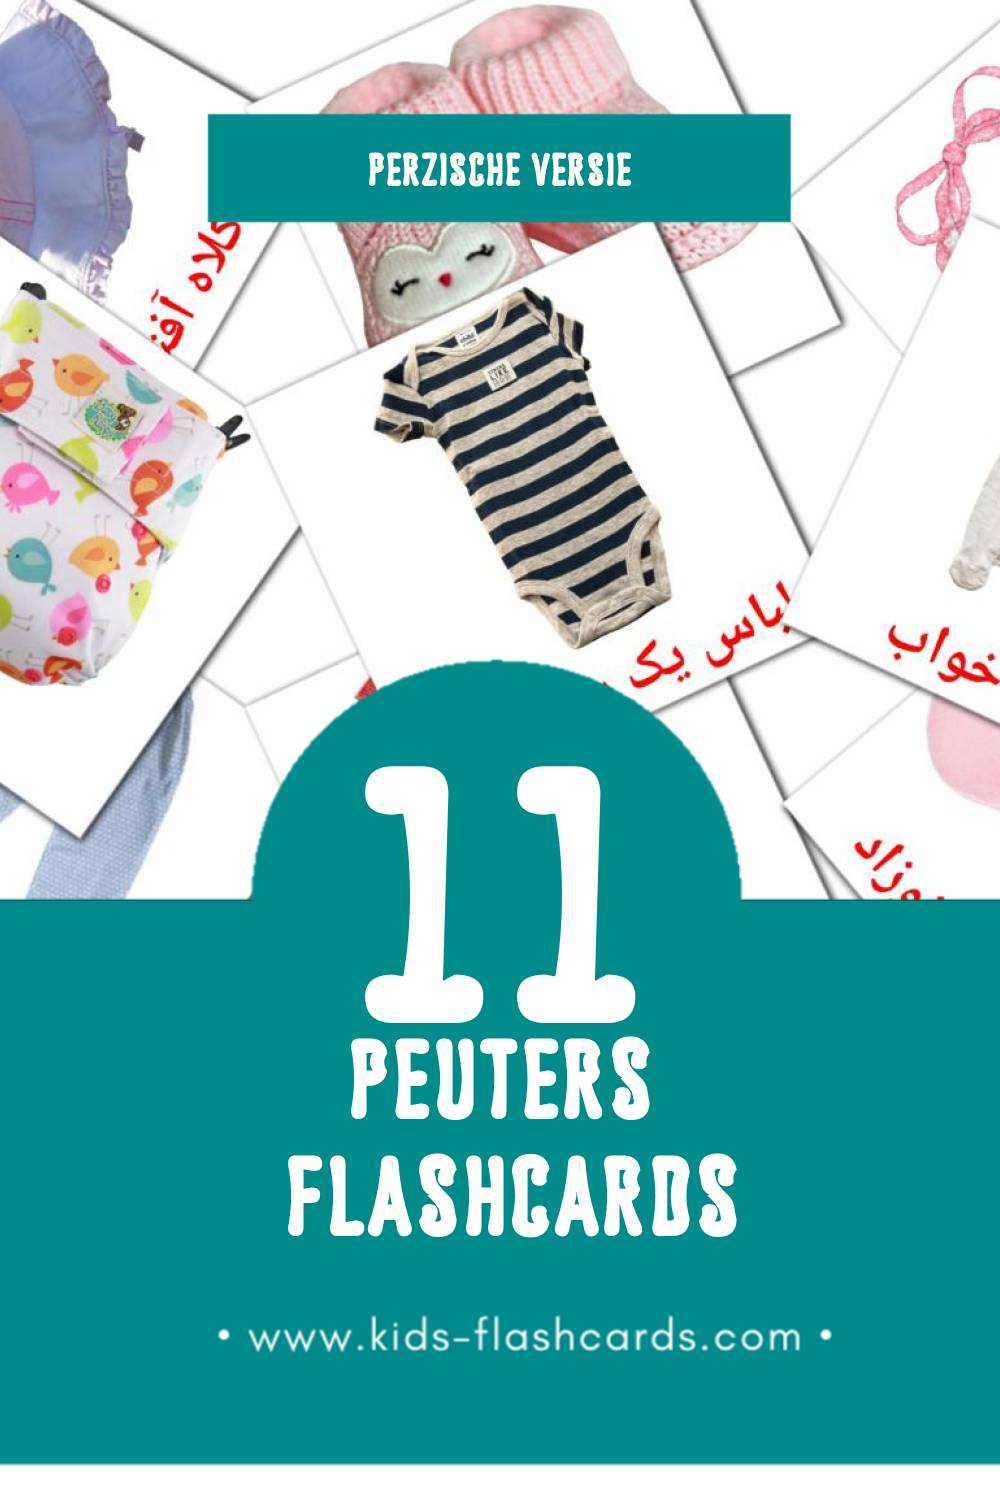 Visuele بچه Flashcards voor Kleuters (11 kaarten in het Perzisch)